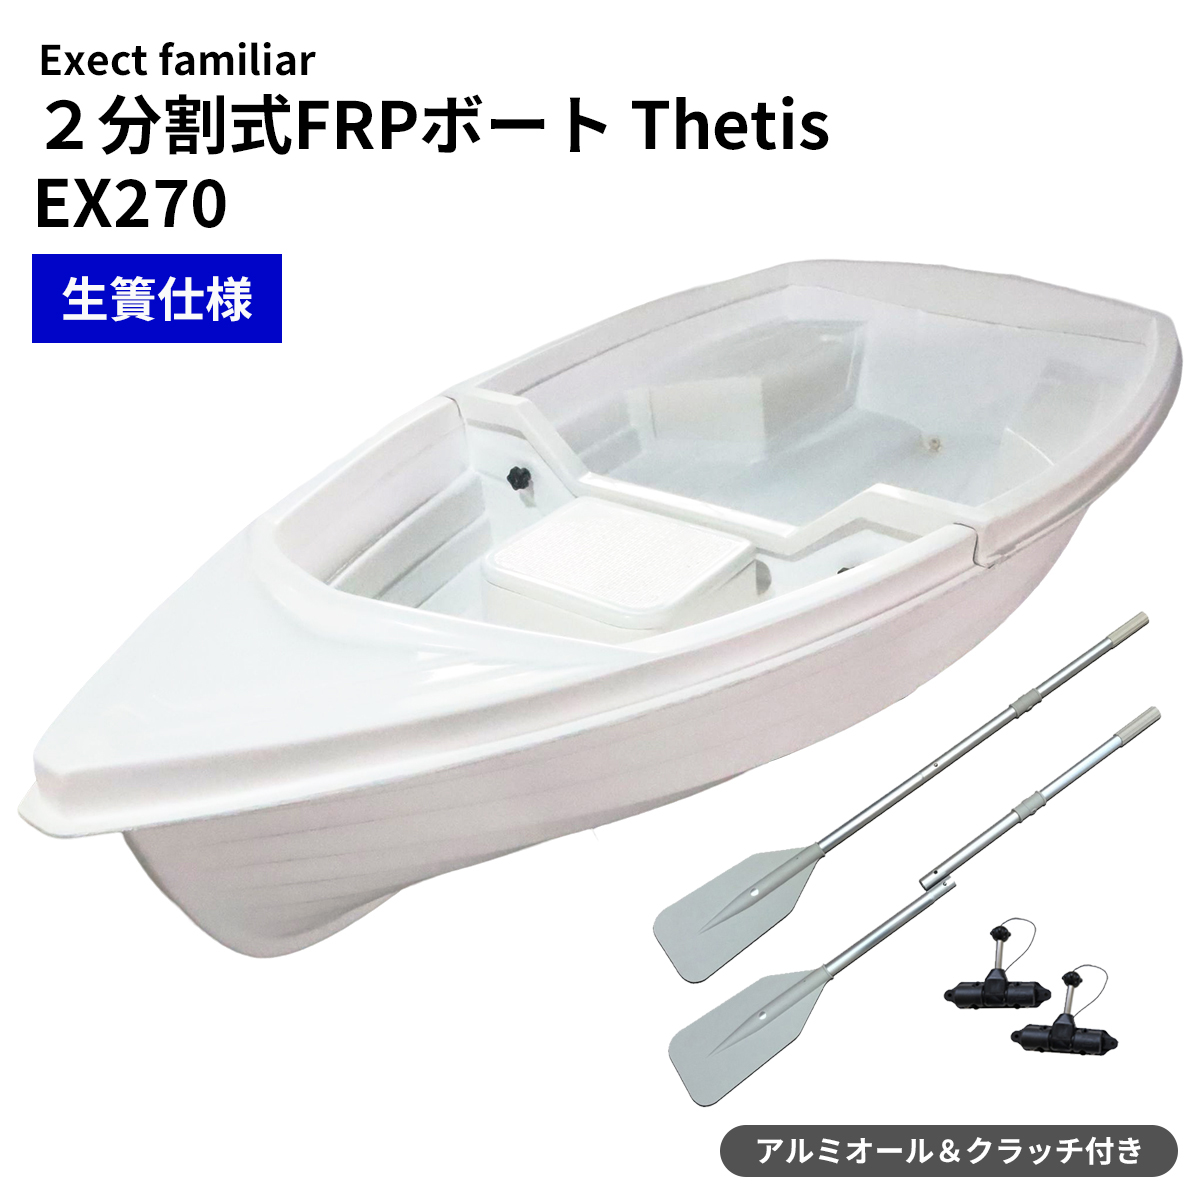 13周年記念イベントが 2分割式FRPボート EX2700 Thetis テティス Exect ...